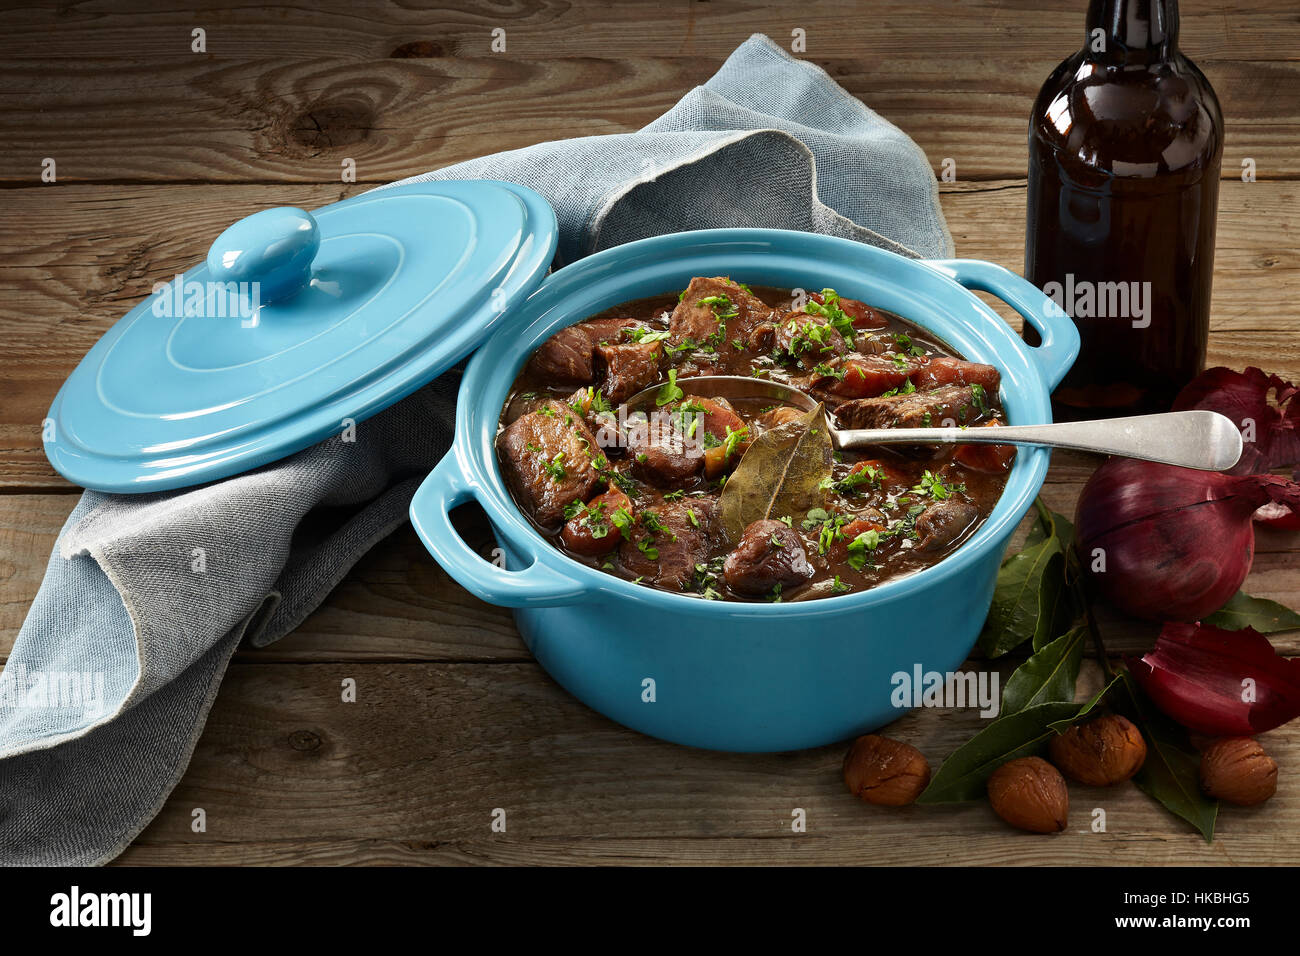 Beef stout casserole Stock Photo